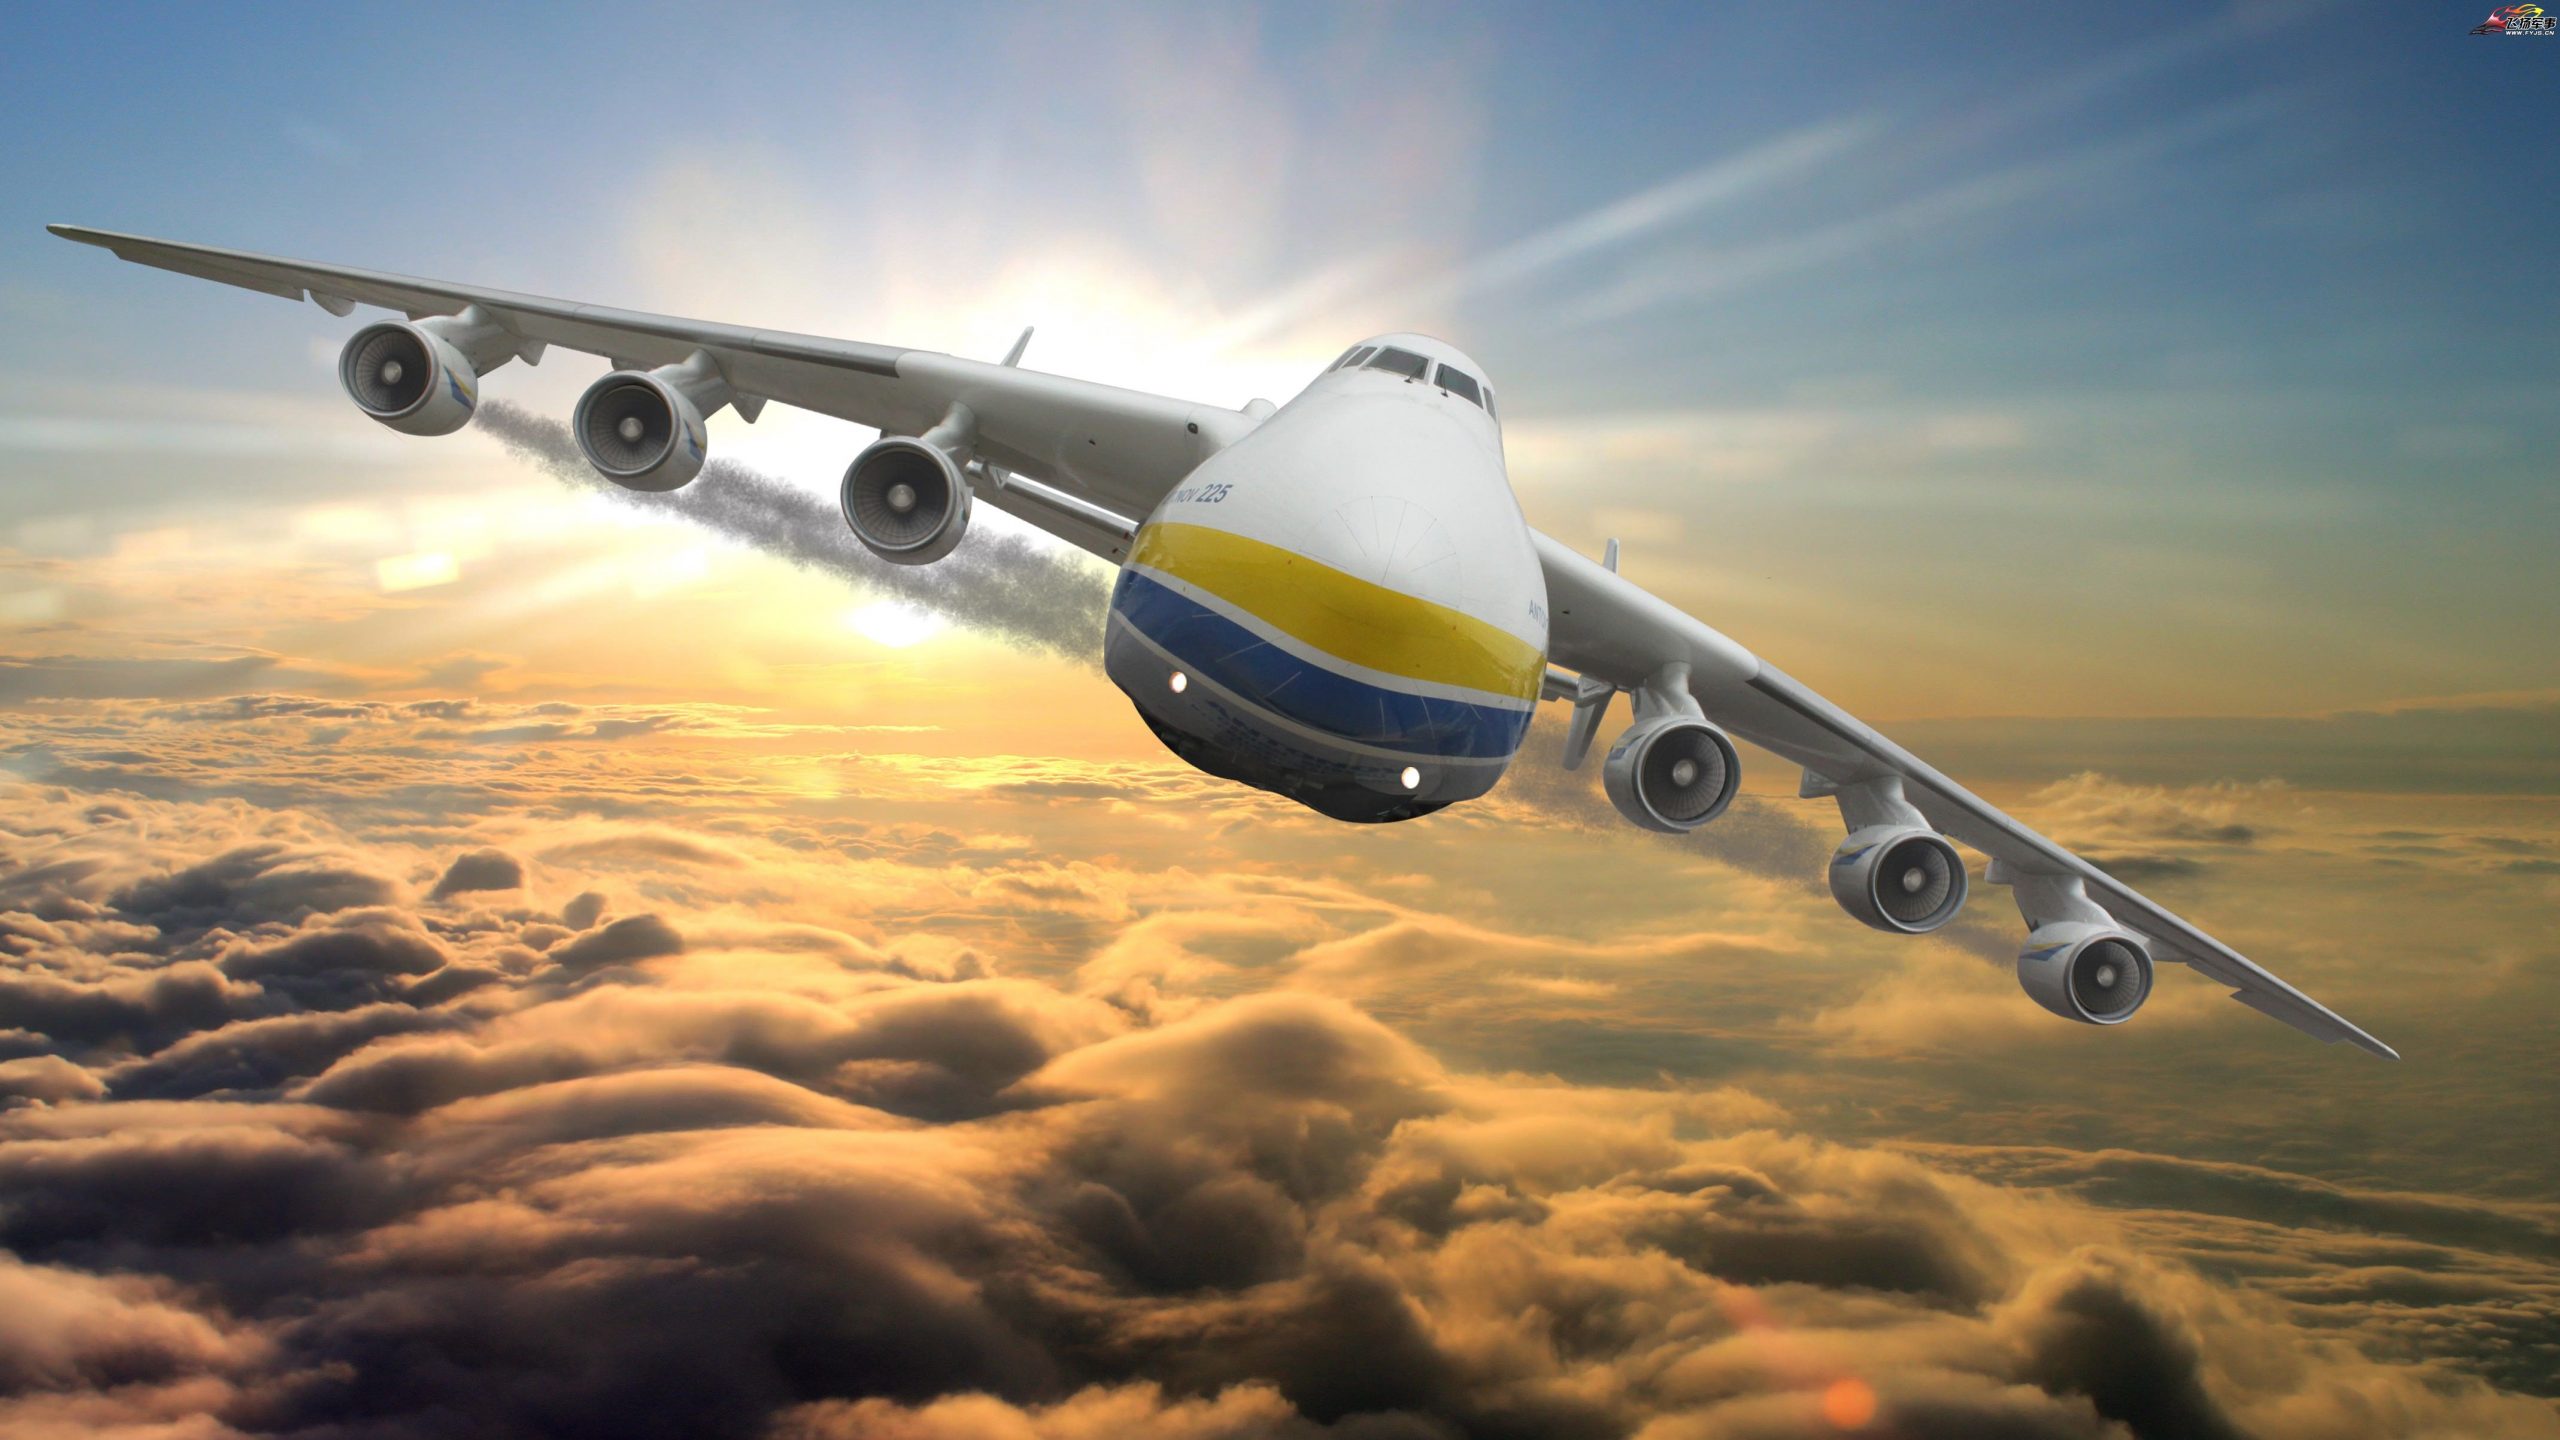 优享资讯 | 世界上最大的飞机在第七次试飞中达到27000英尺的新高度记录